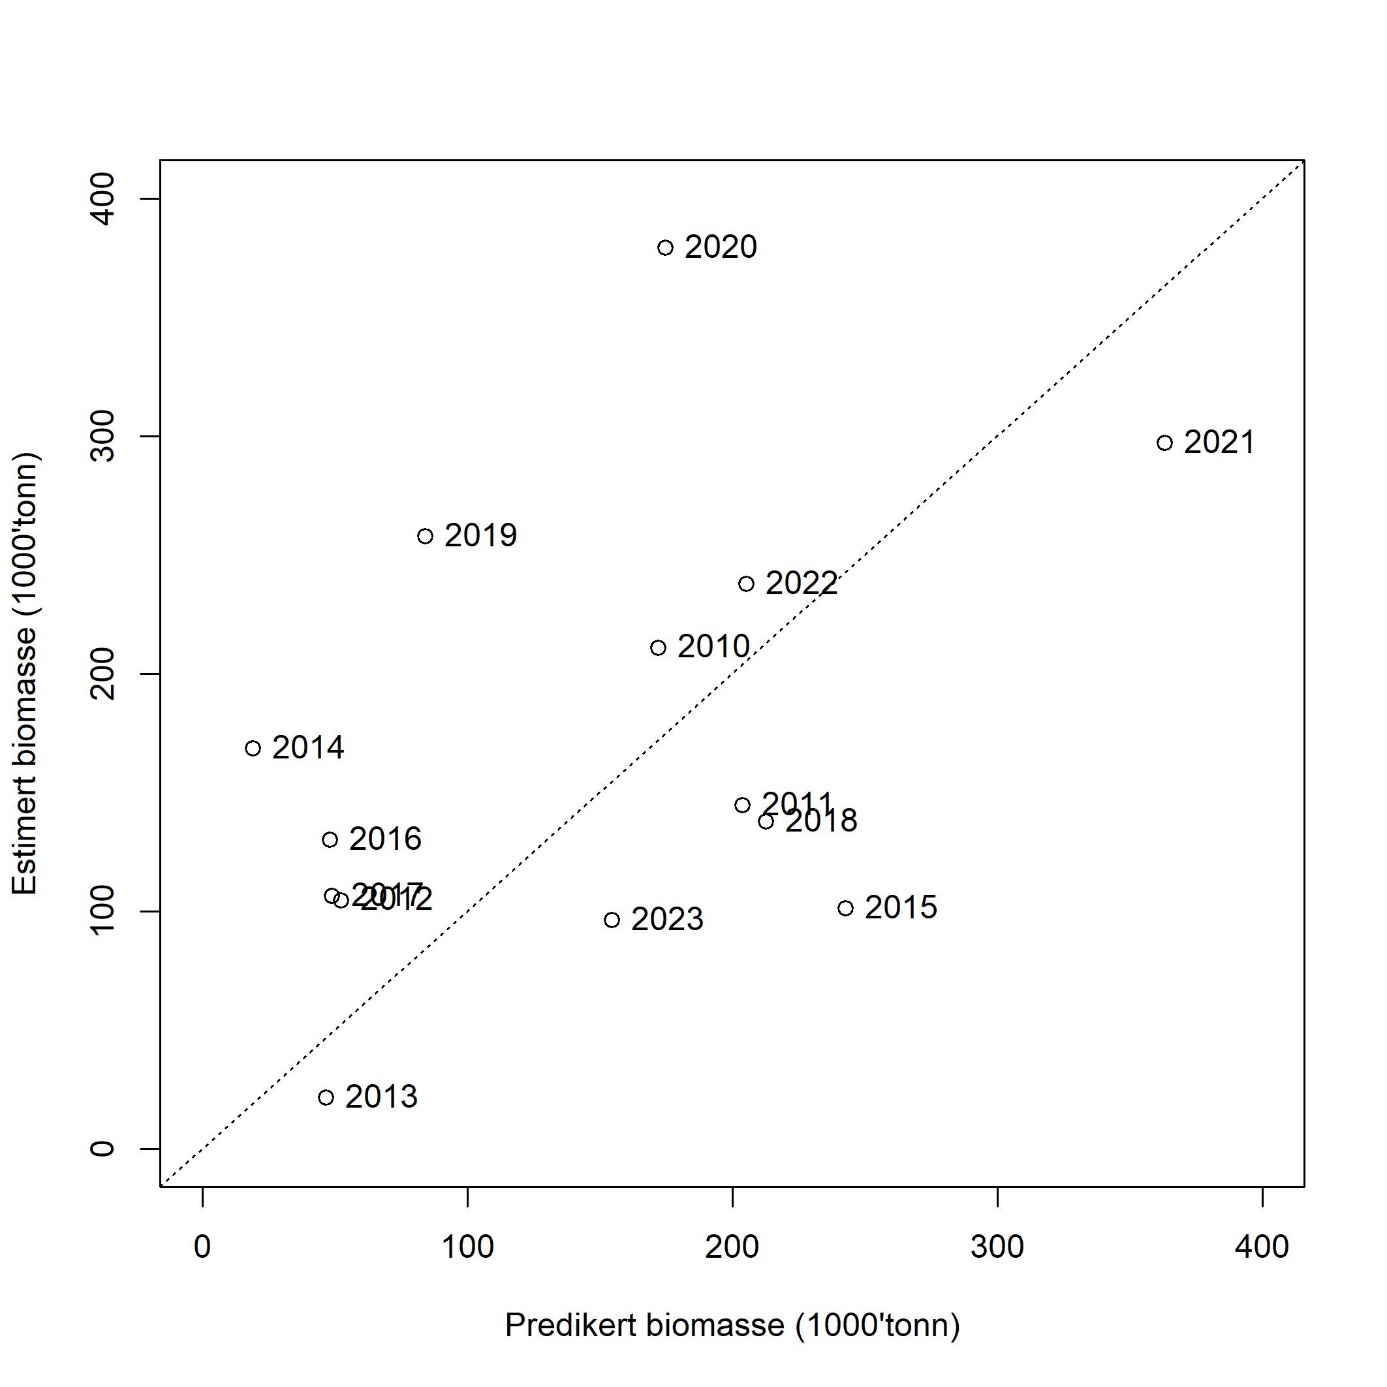 Predikert biomasse versus estimert biomasse av 2 år og eldre tobis i det akustiske toktet i mai per år. Den stiplede linjen viser kurven der predikert og estimert biomasse er lik. Årstallene viser til toktår (da biomassen ble estimert).